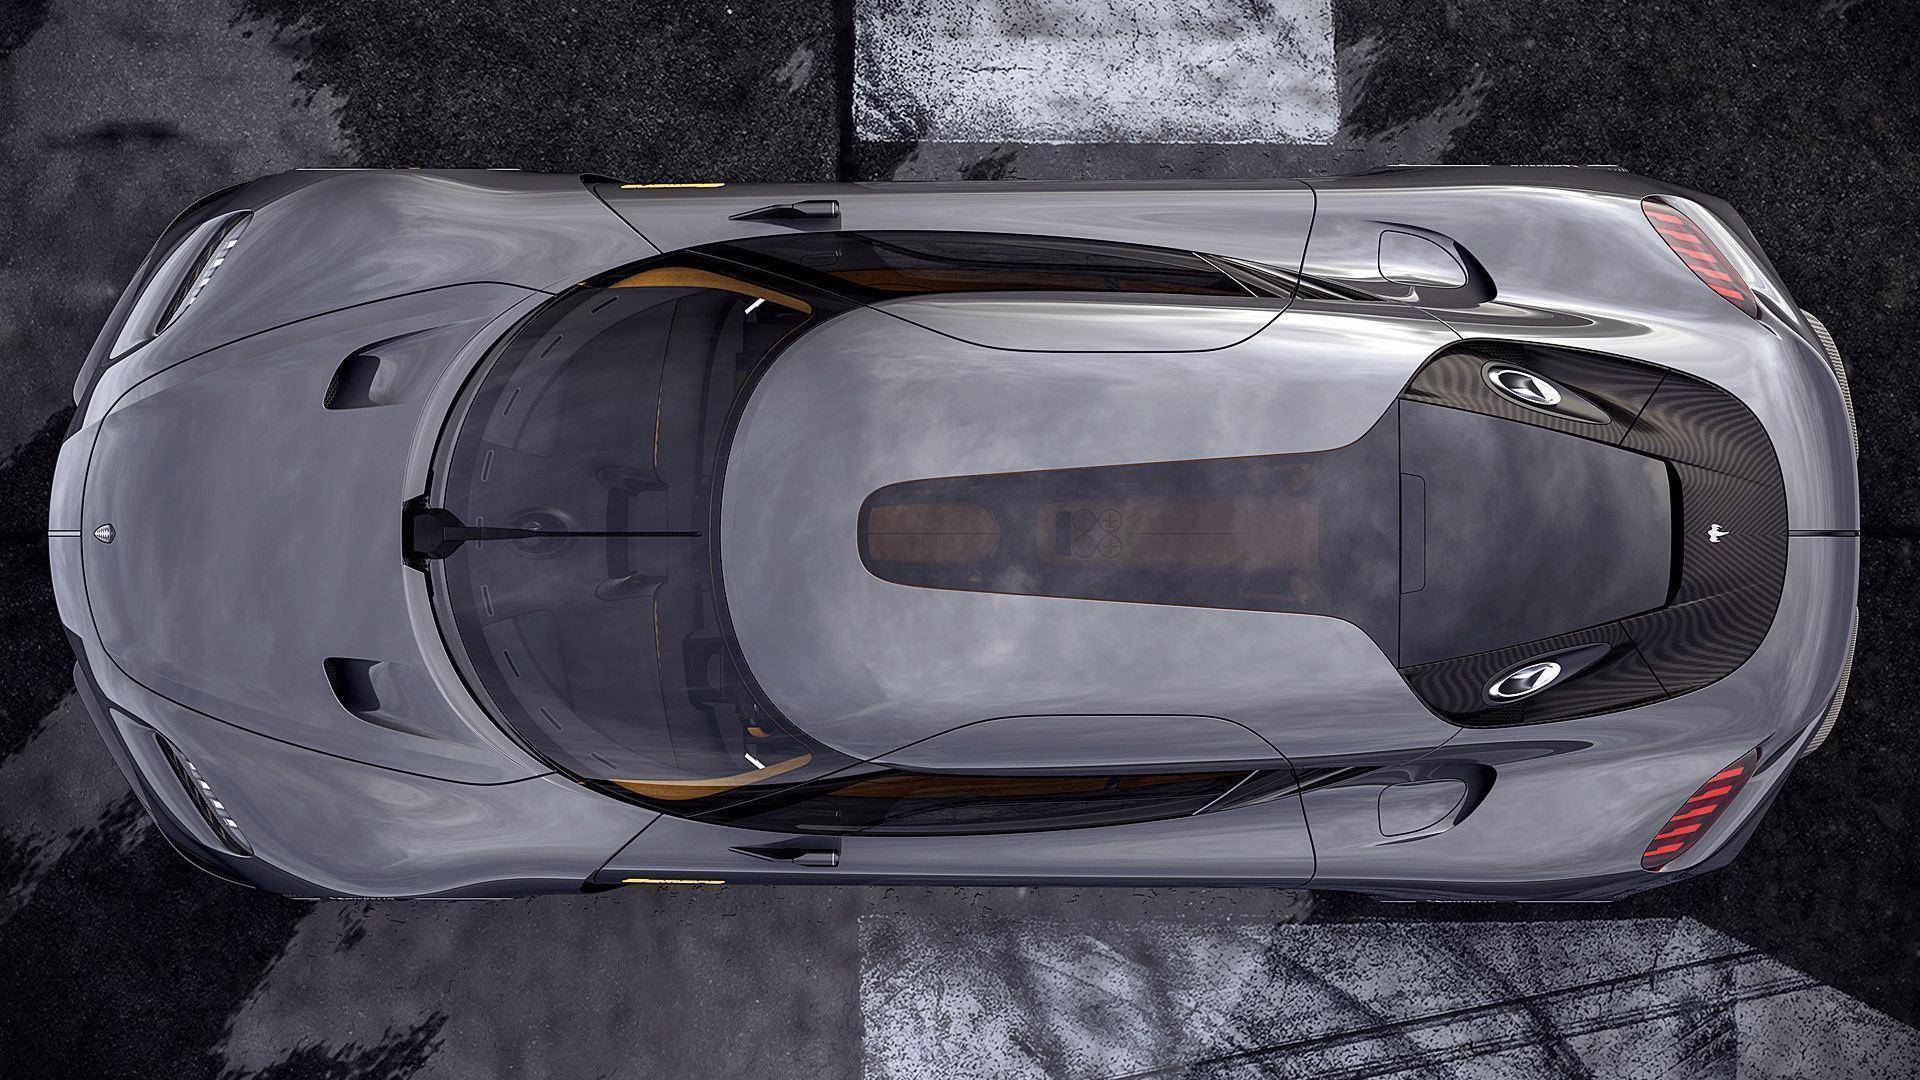 OiCar-四人座超跑、鍘刀式車門!!擁有Koenigsegg Gemera有錢只是基本門檻